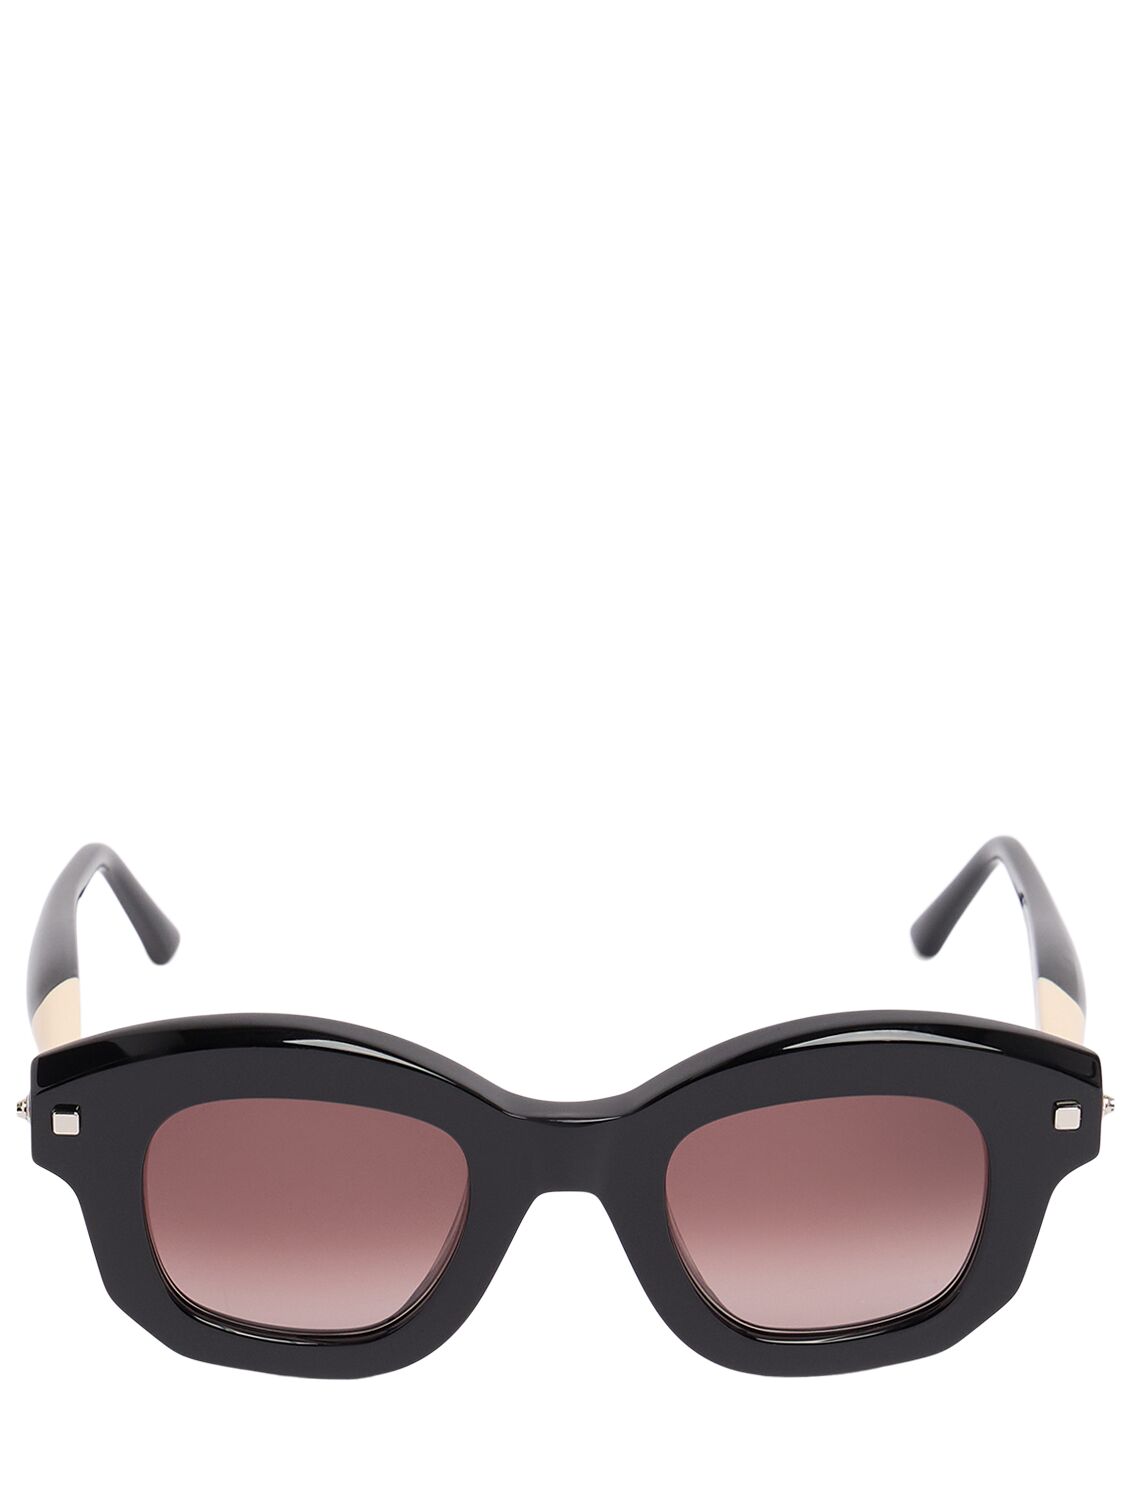 Kuboraum Berlin J1 Round Acetate Sunglasses In Black,ivory